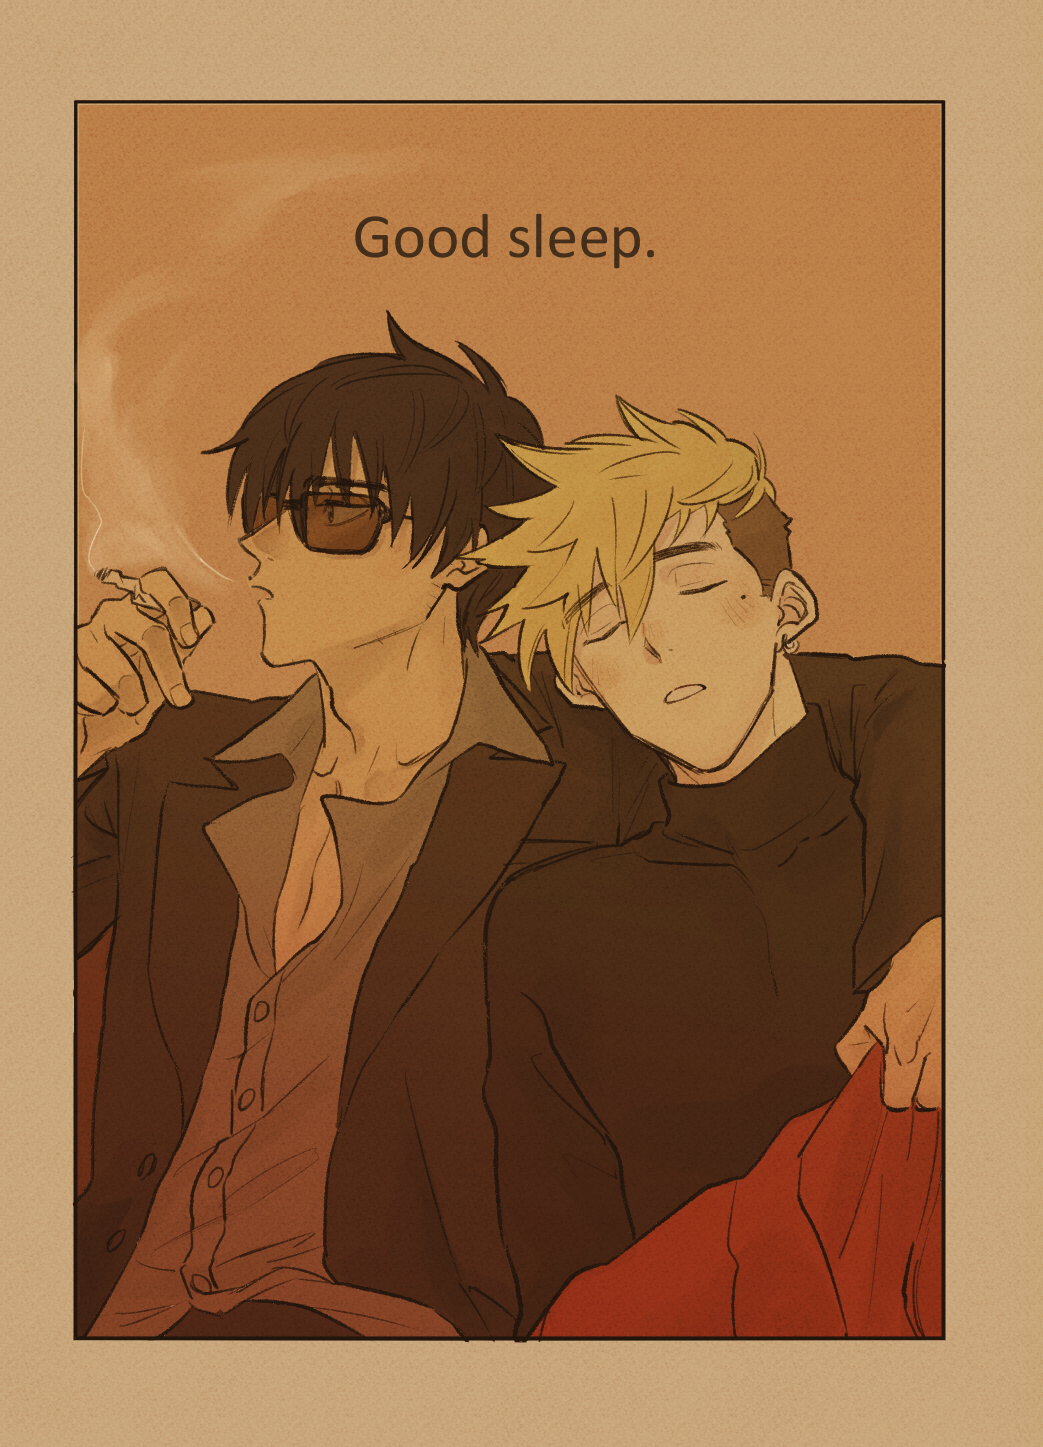 【葬台】Good sleep.